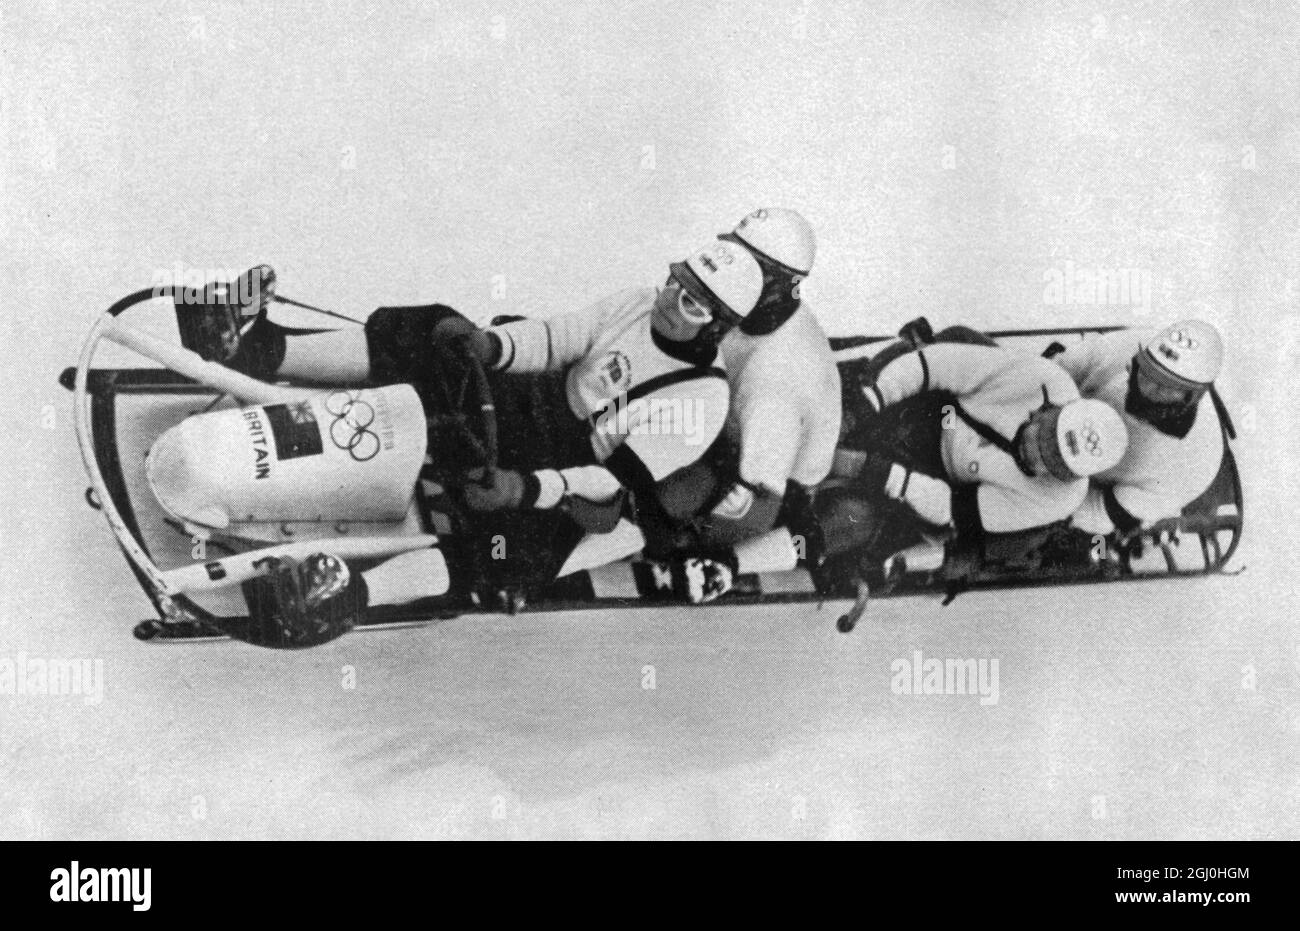 1936 Jeux Olympiques d'hiver Garmisch - Partenkirchen, Allemagne Grande-Bretagne I - 4 hommes équipe de bobsleigh en action. Ils ont gagné la médaille de bronze. ©TopFoto Banque D'Images